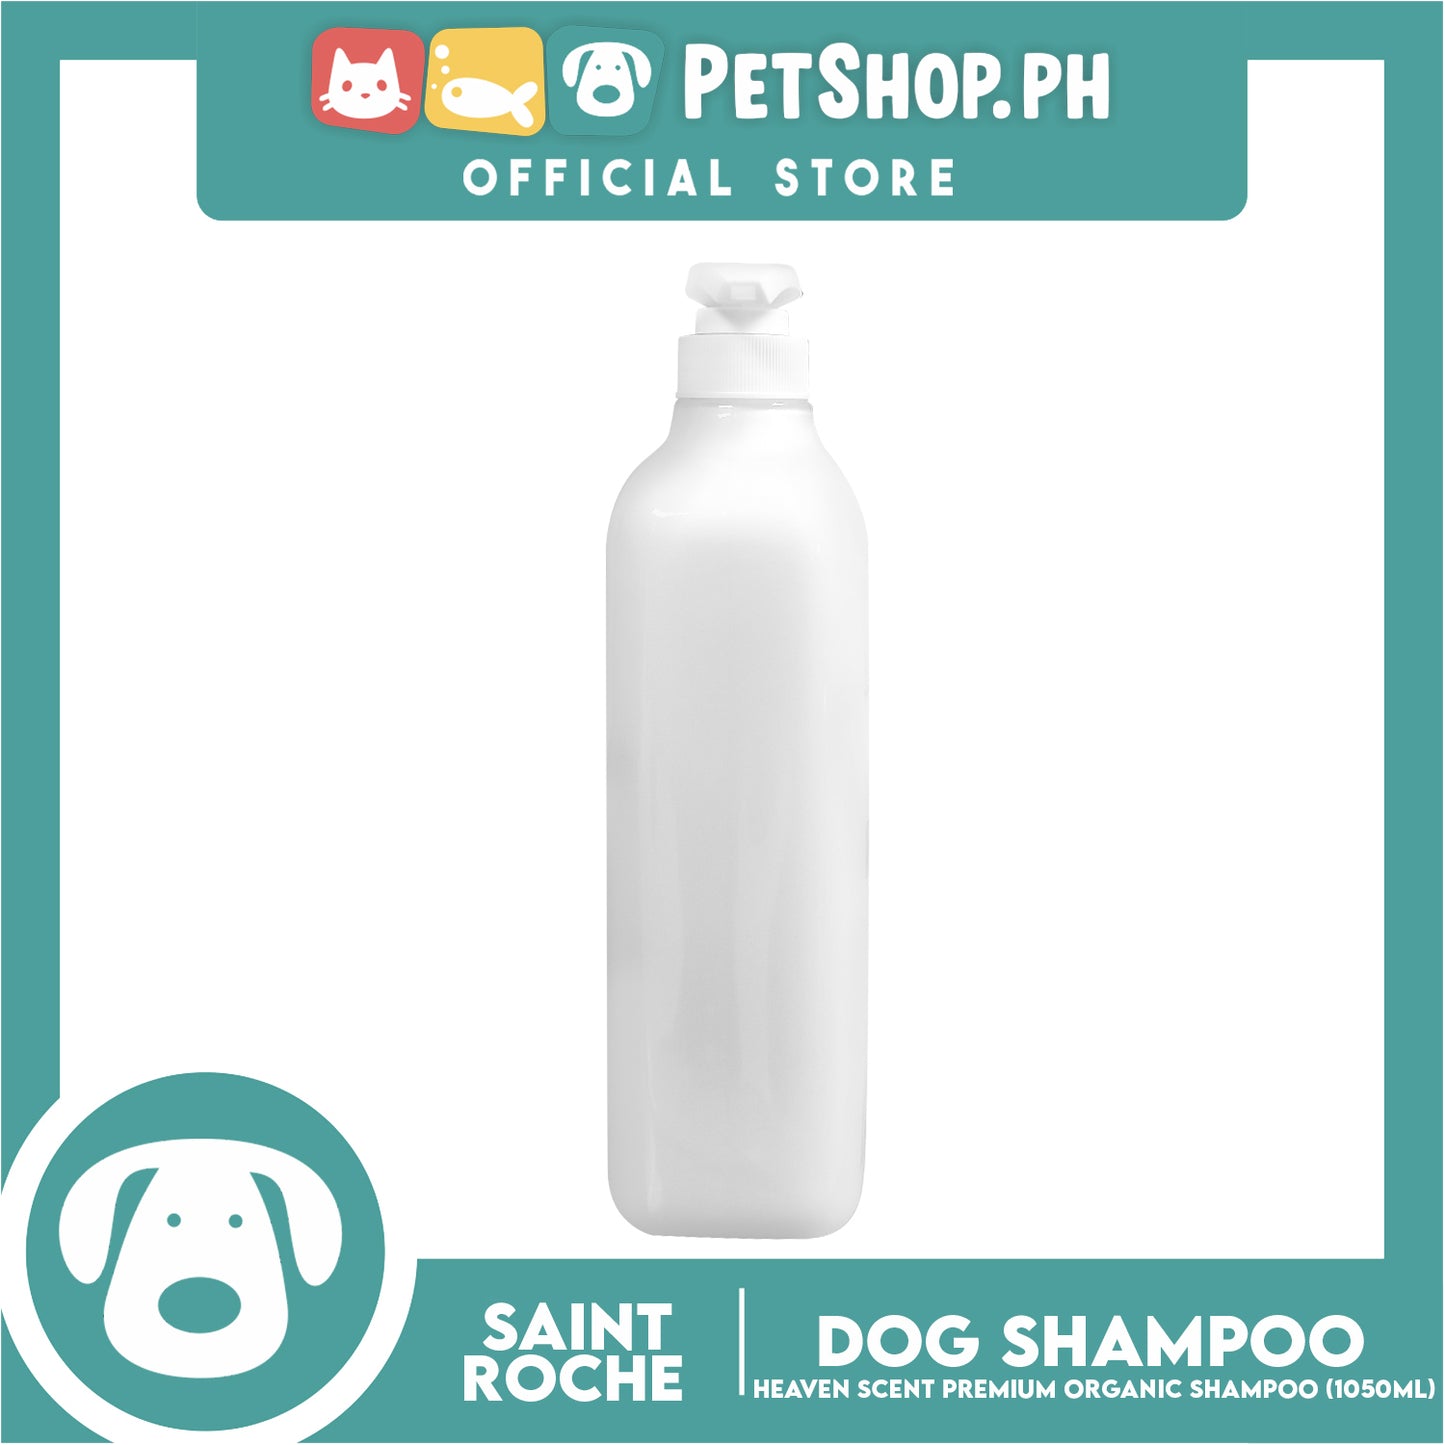 Saint Roche Premium Organic (Heaven Scent) 1050ml Dog Shampoo